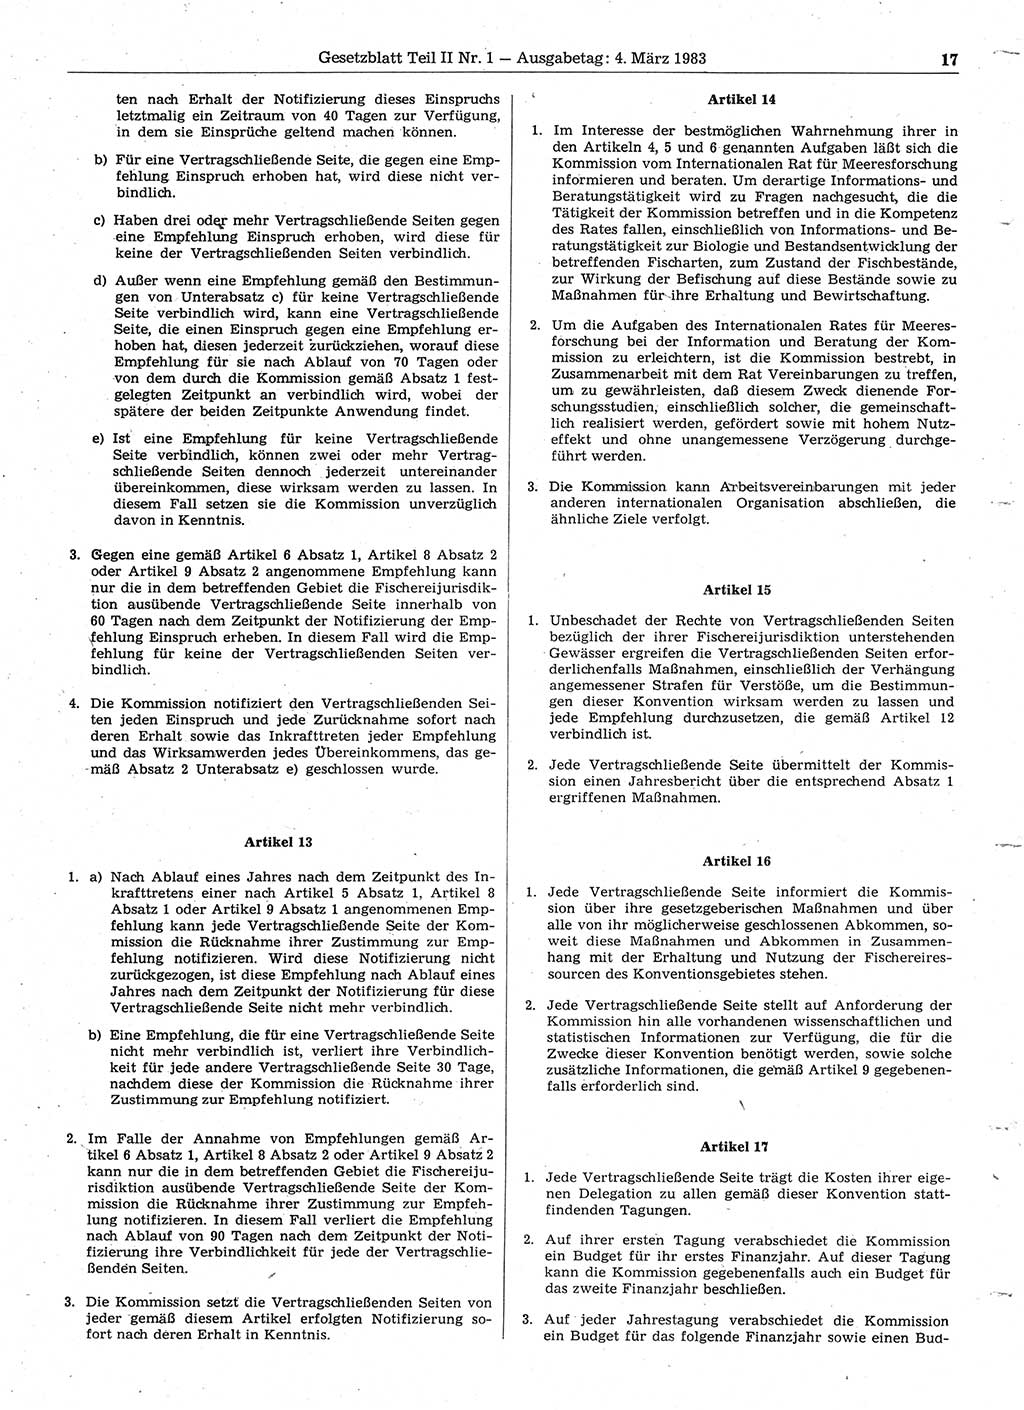 Gesetzblatt (GBl.) der Deutschen Demokratischen Republik (DDR) Teil ⅠⅠ 1983, Seite 17 (GBl. DDR ⅠⅠ 1983, S. 17)